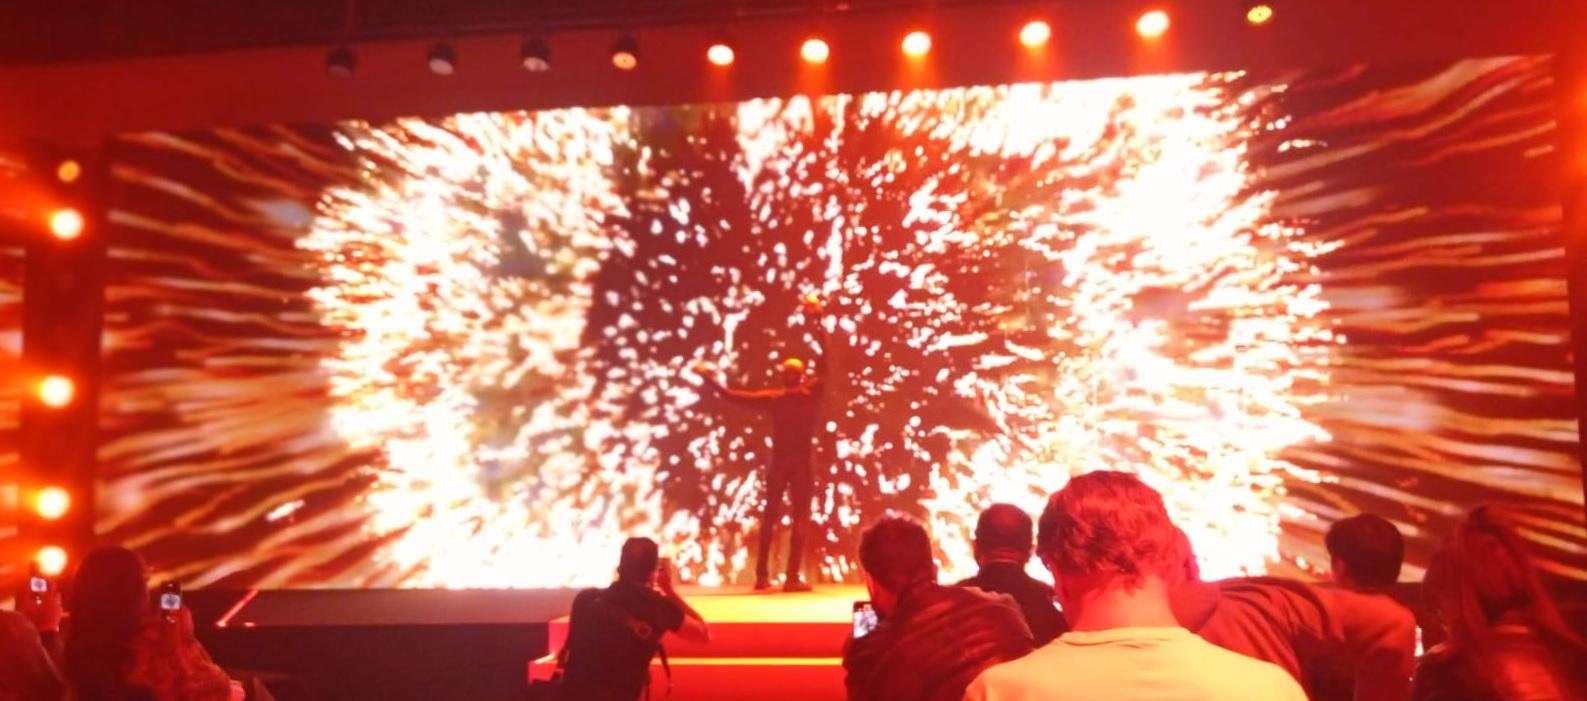 LG apresenta no Brasil TV wireless; OLED 8K chega este ano